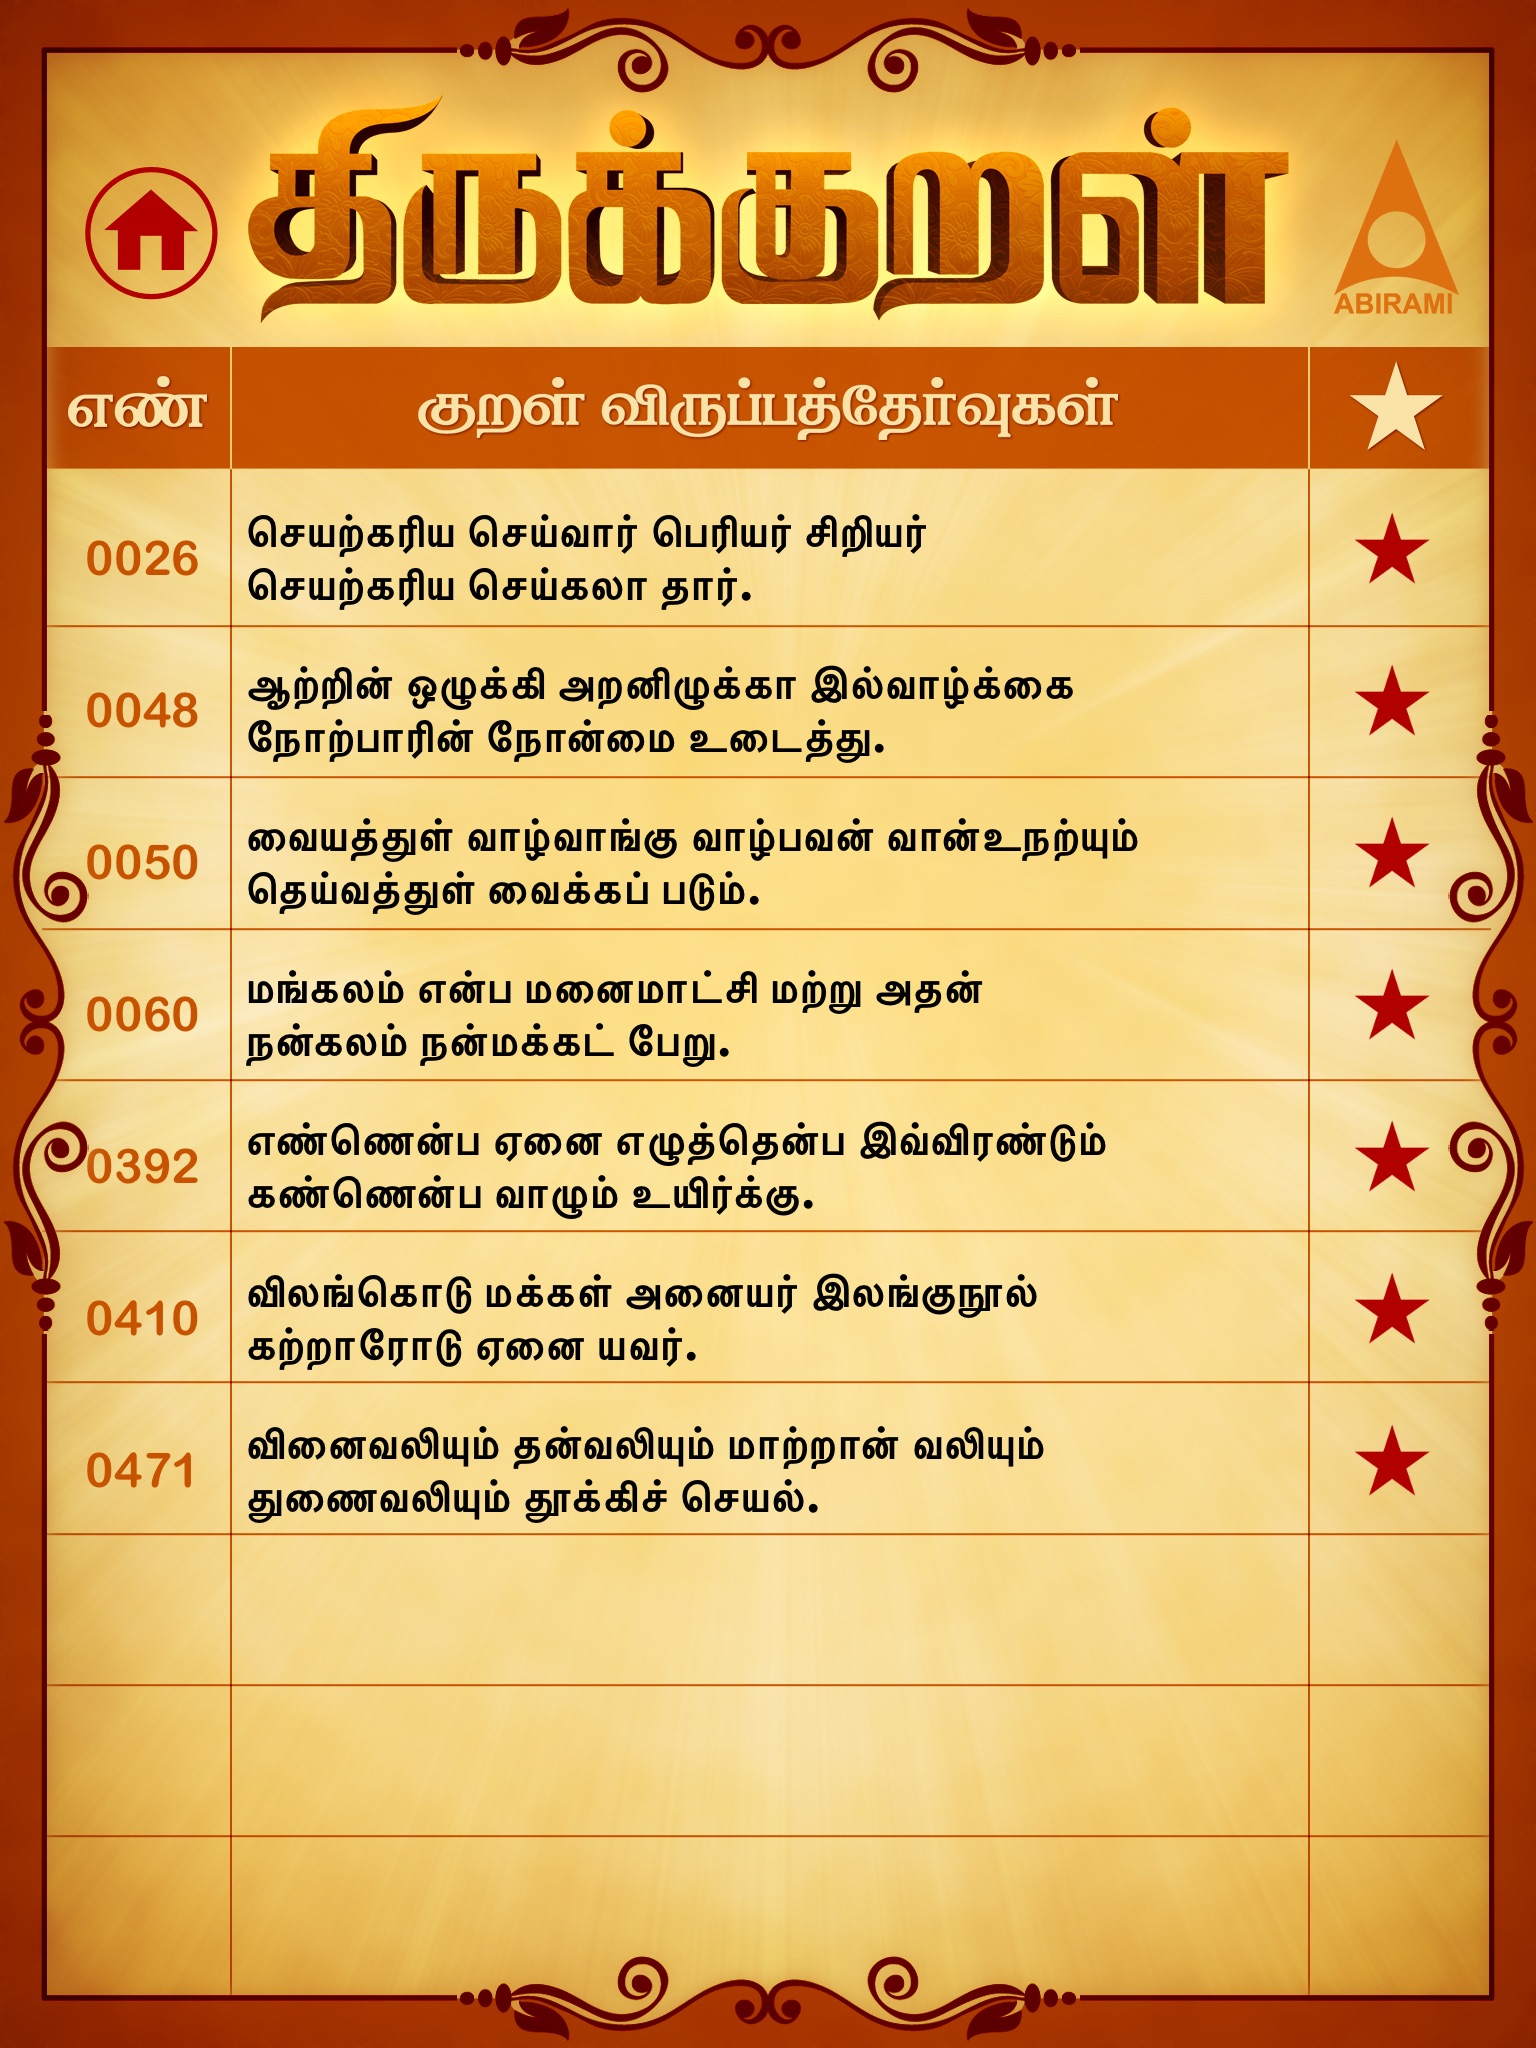 Thirukkural in Tamil - HD screenshot 3